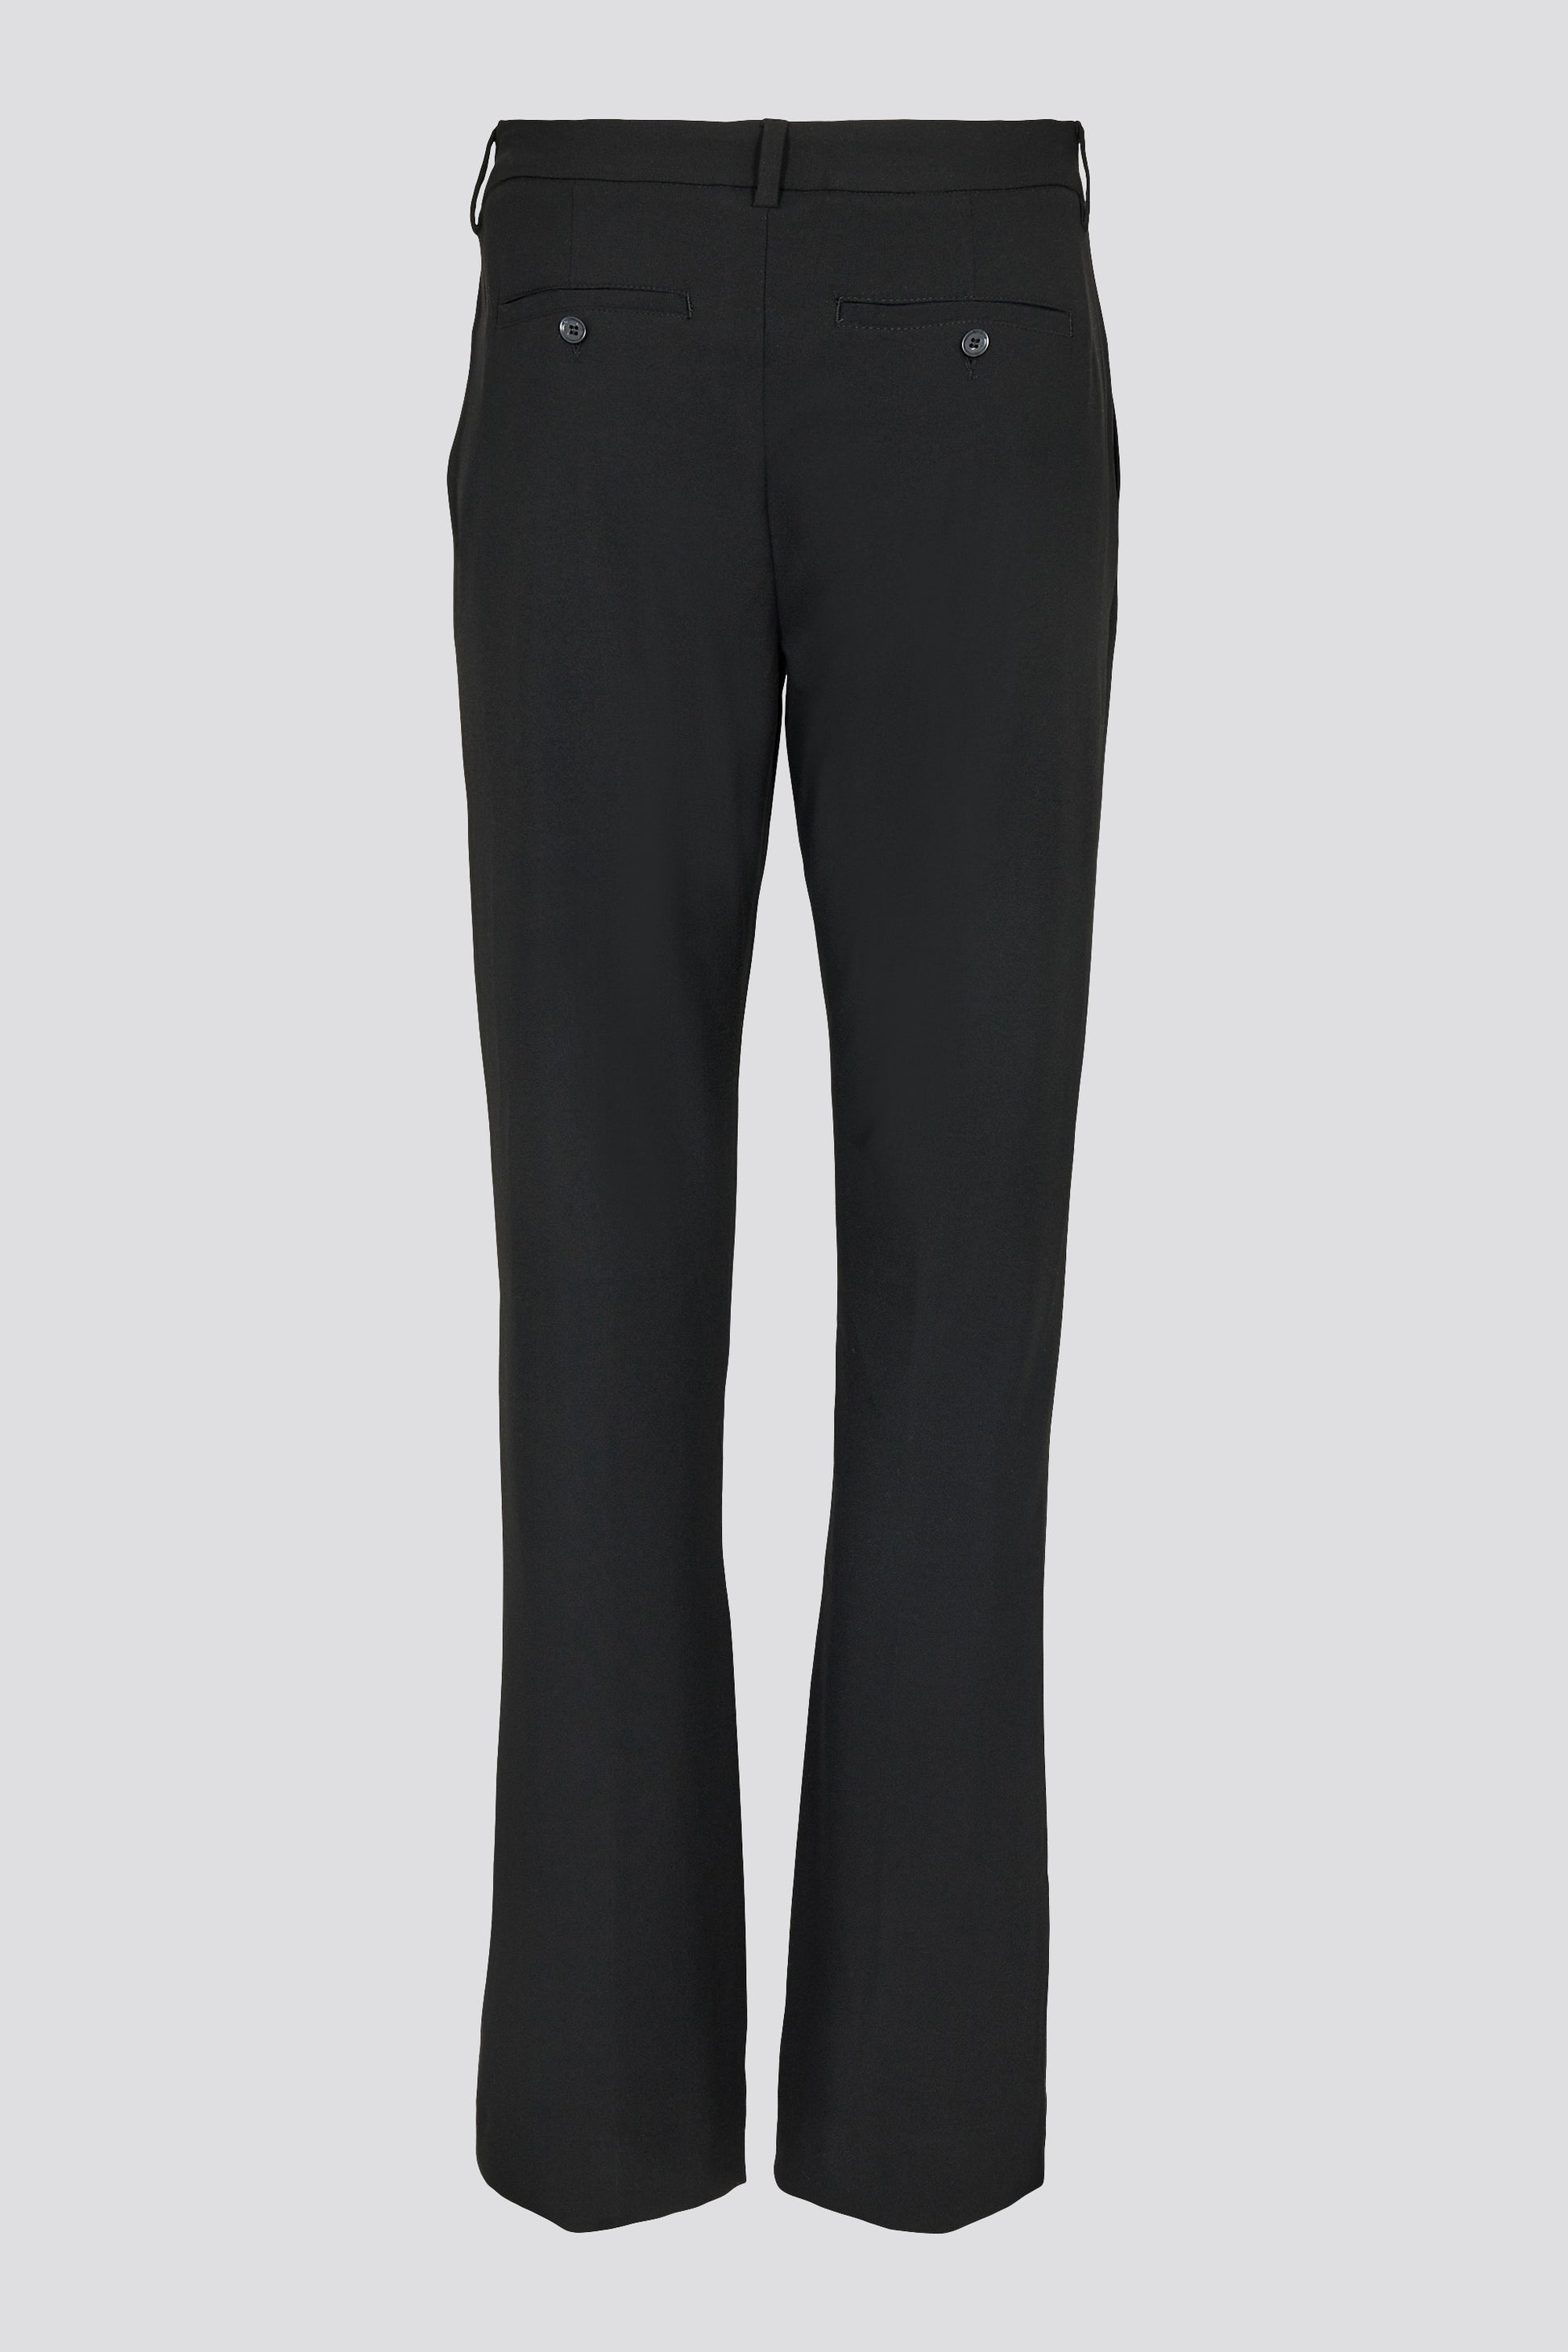 IVY Copenhagen IVY-Khloe Pant Jeans & Pants 9 Black